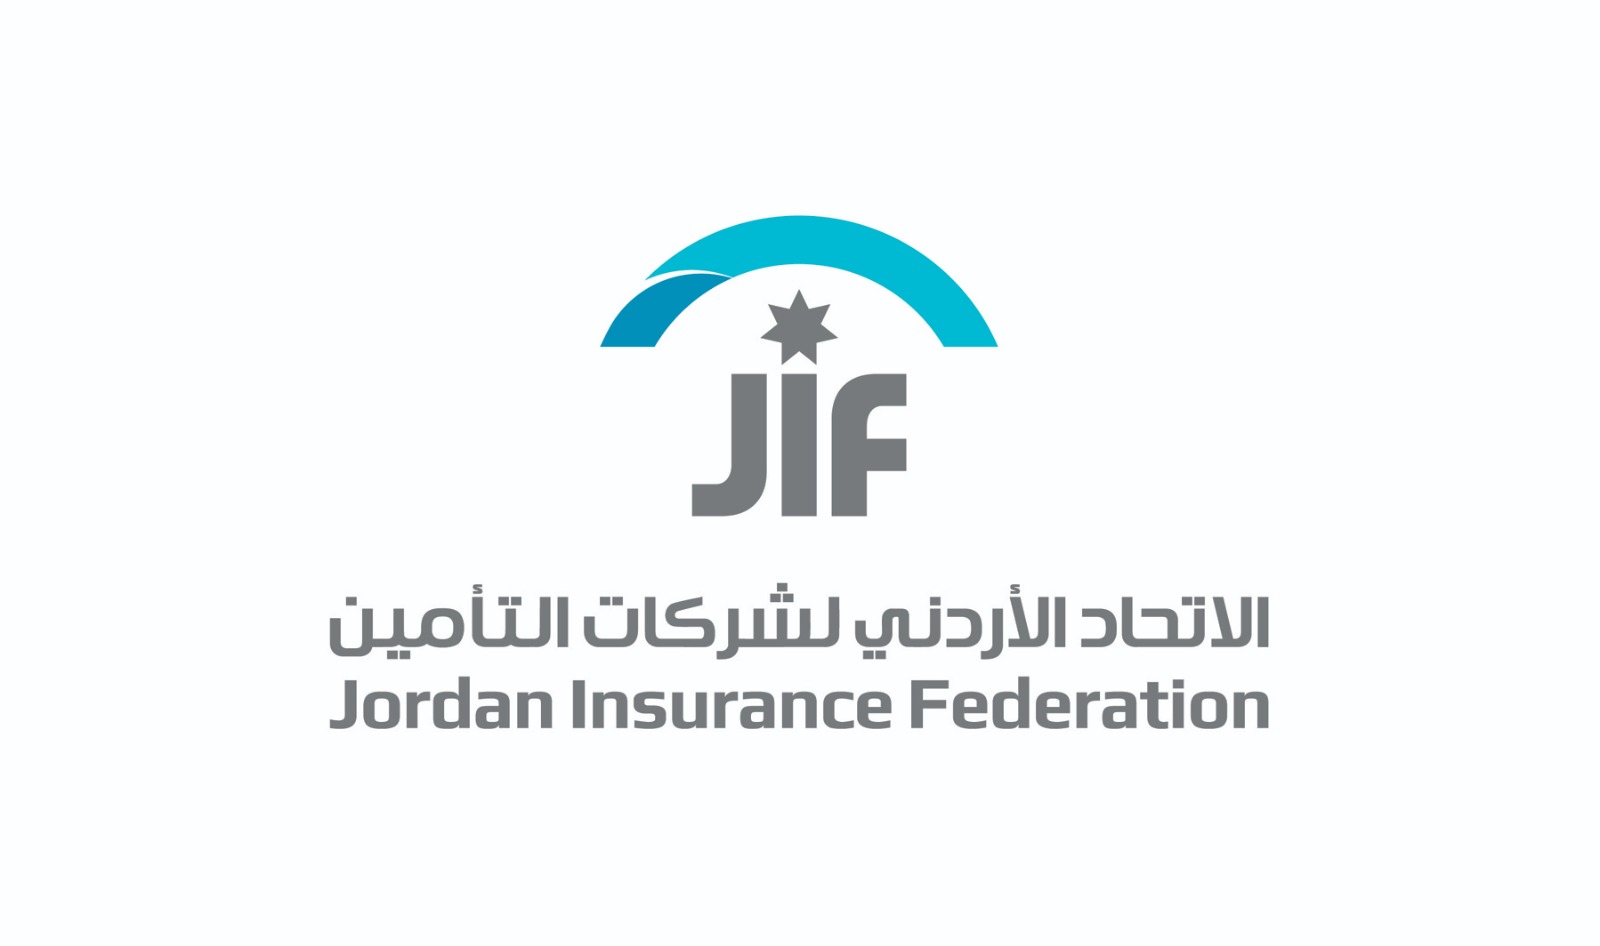 الاتحاد الأردني لشركات التأمين يطلق الشعار الجديد تحت عنوان الاتحاد الأردني لشركات التأمين: تطور مستمر، هوية متجددة